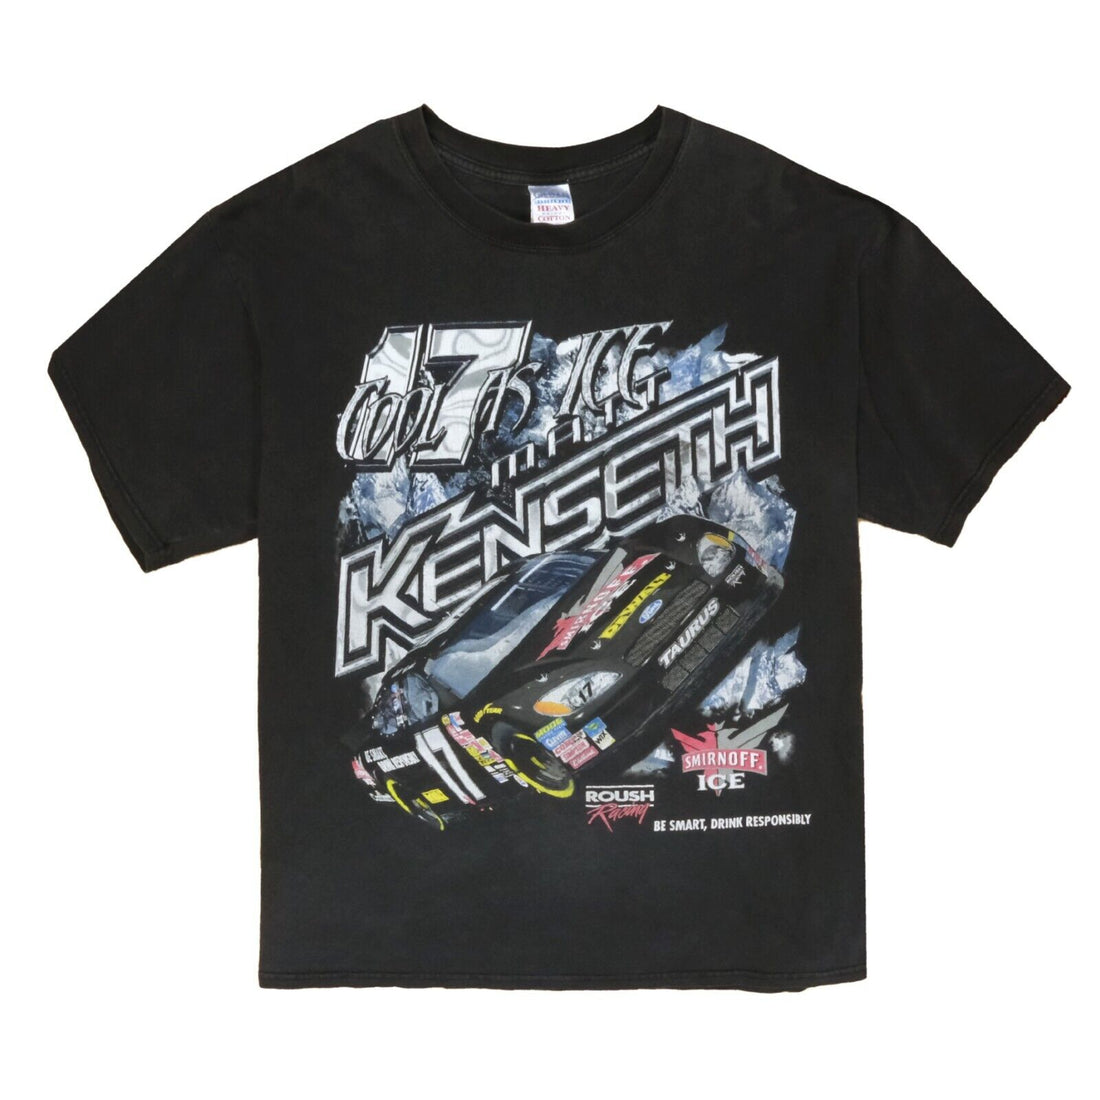 Math Kenseth NASCAR Racing T-Shirt Size XL Black #17 2004 Y2K